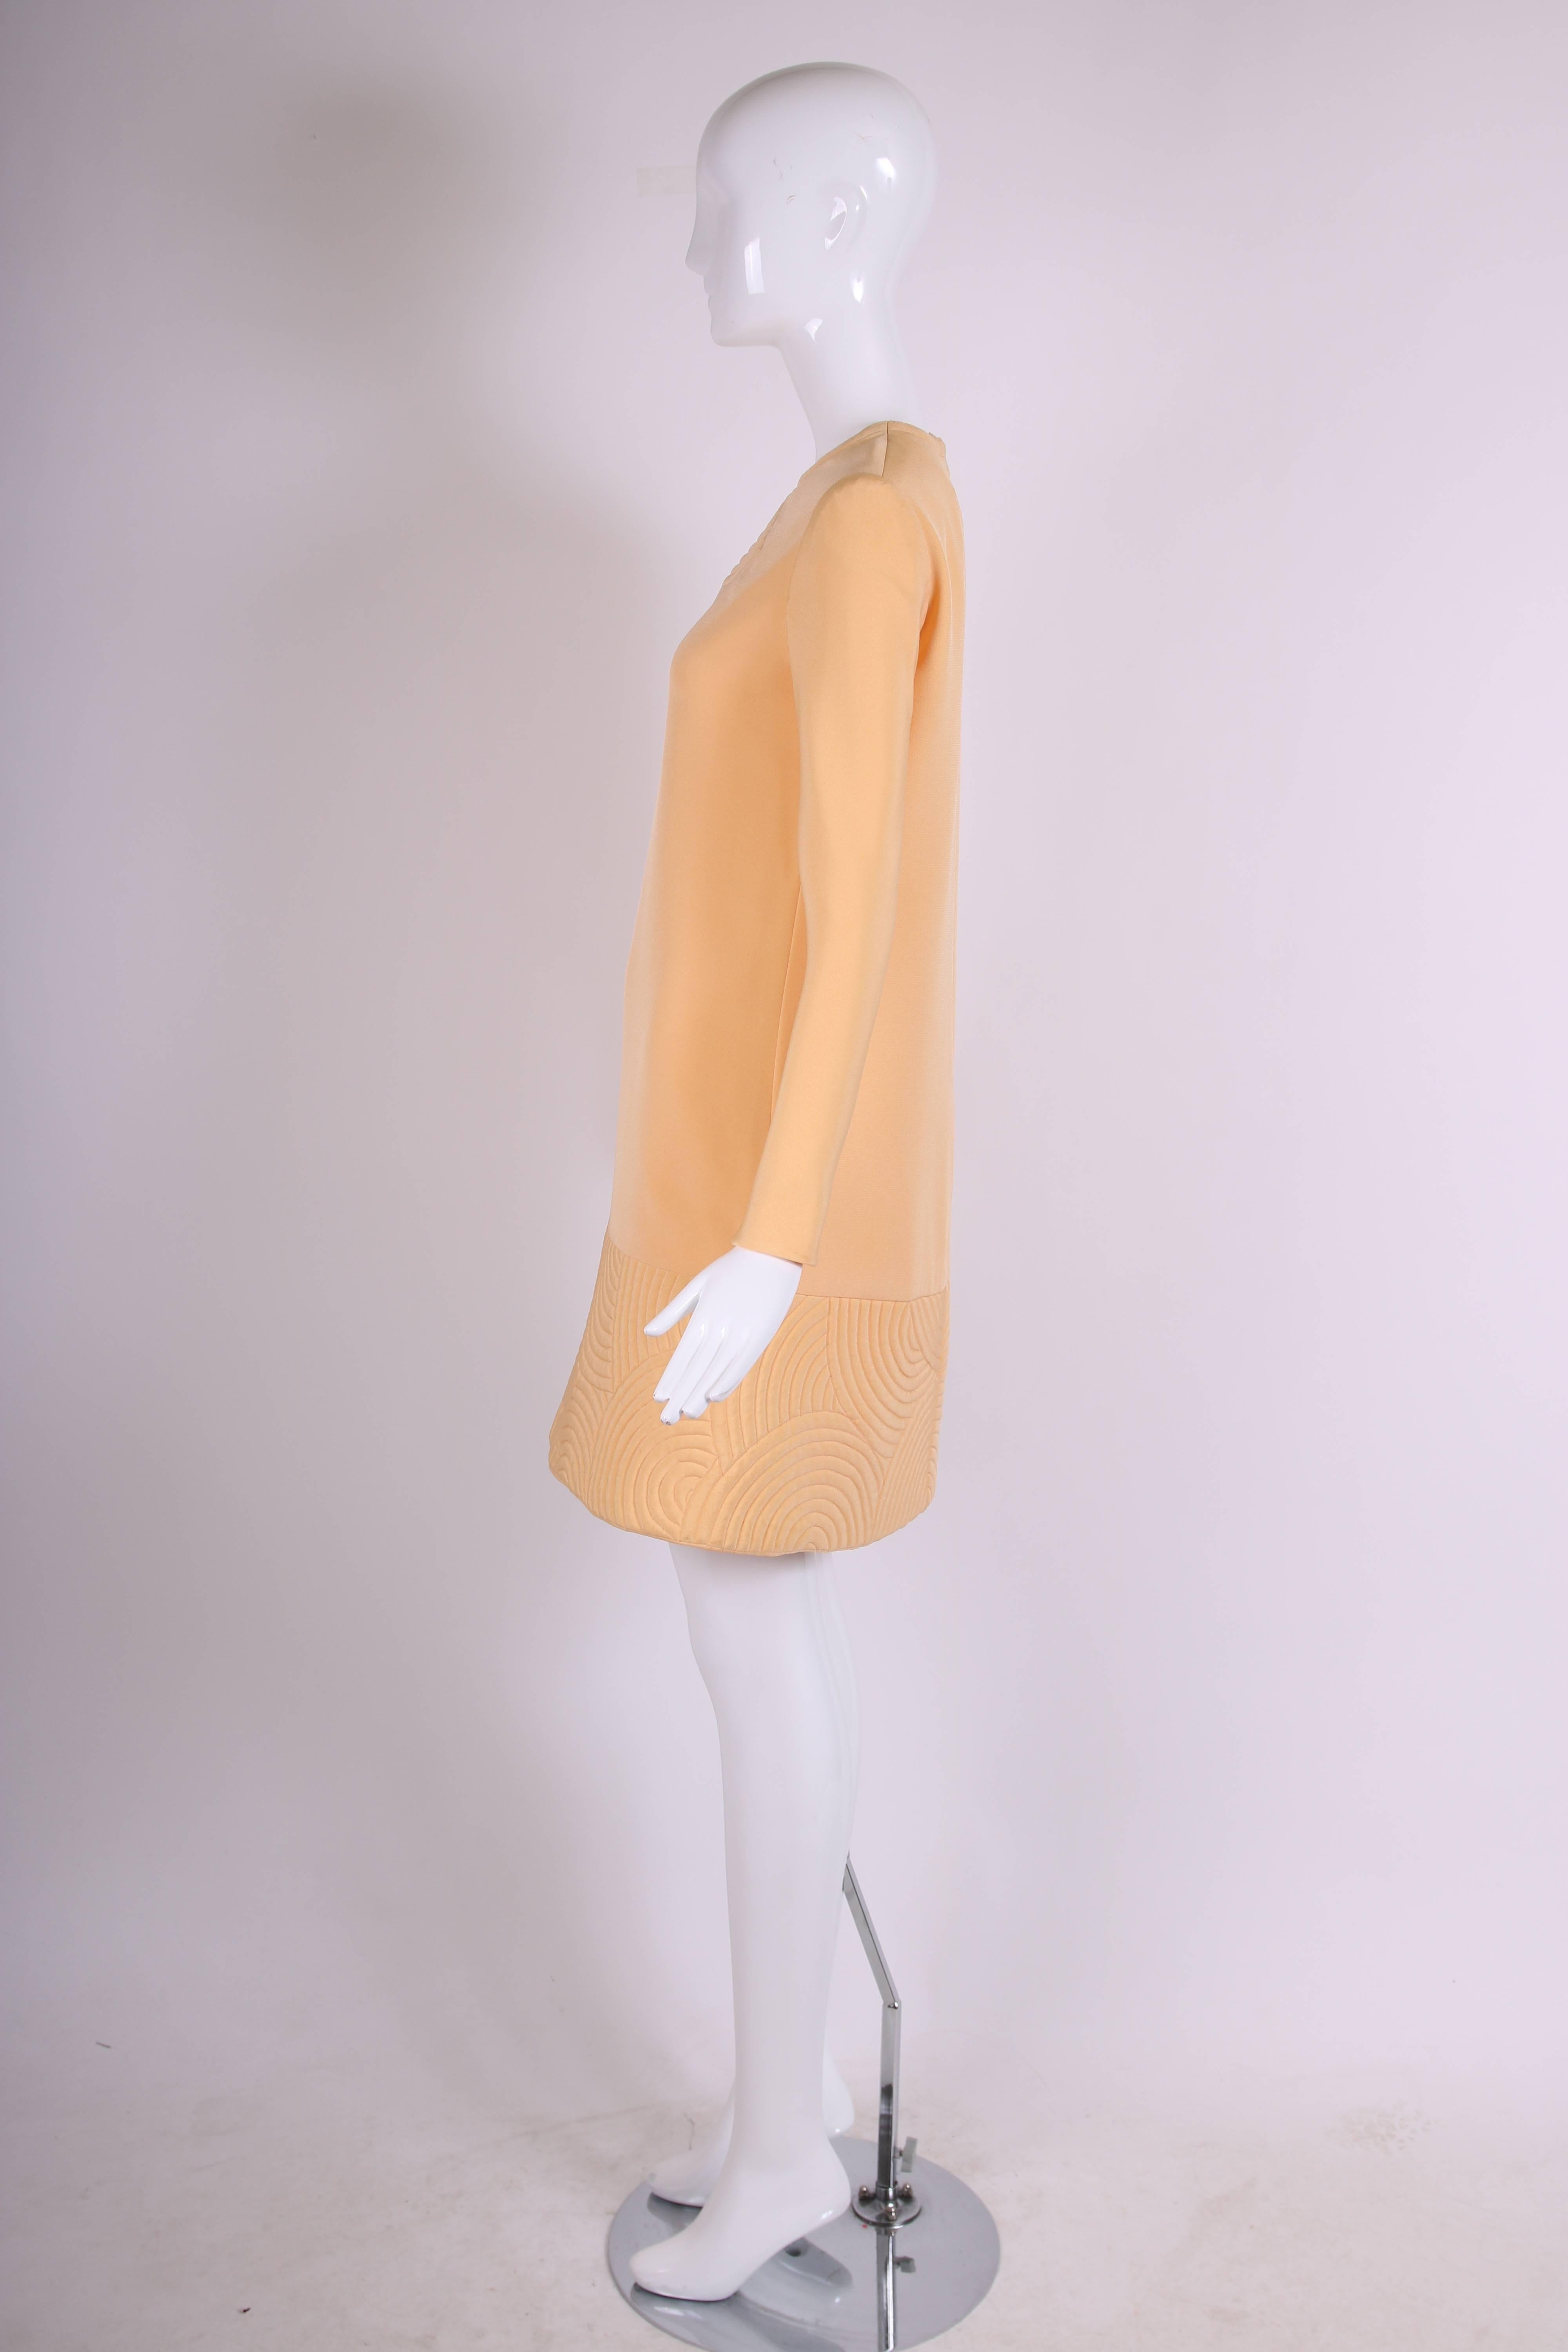 Orange Pierre Cardin Mod Space Age Mini Dress with Geometric Design, 1970s  For Sale